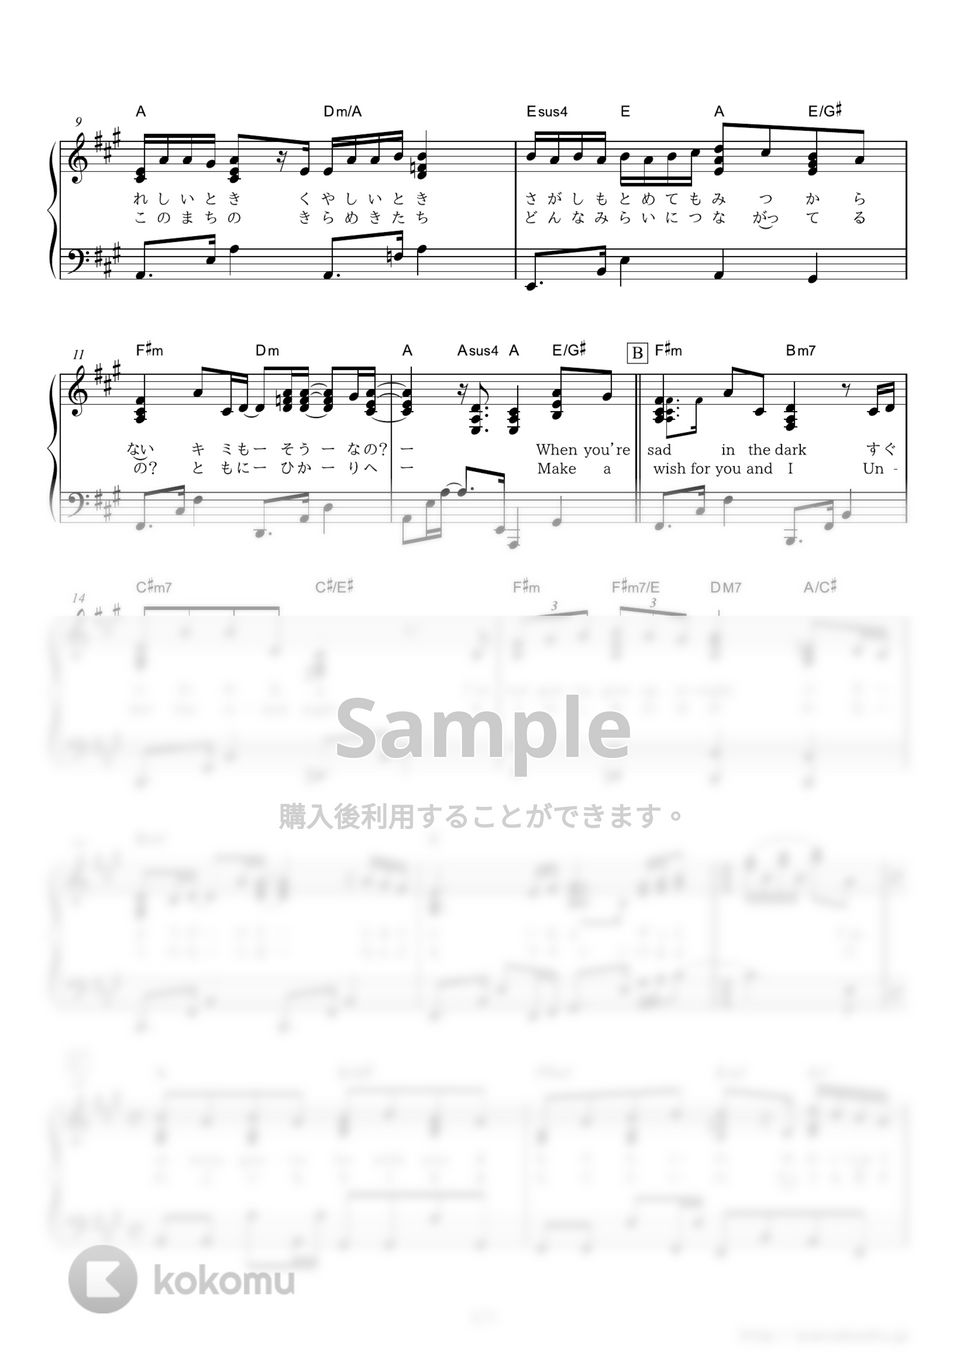 シェネル - Happiness (ドラマ『ディア・シスター』主題歌) by ピアノの本棚